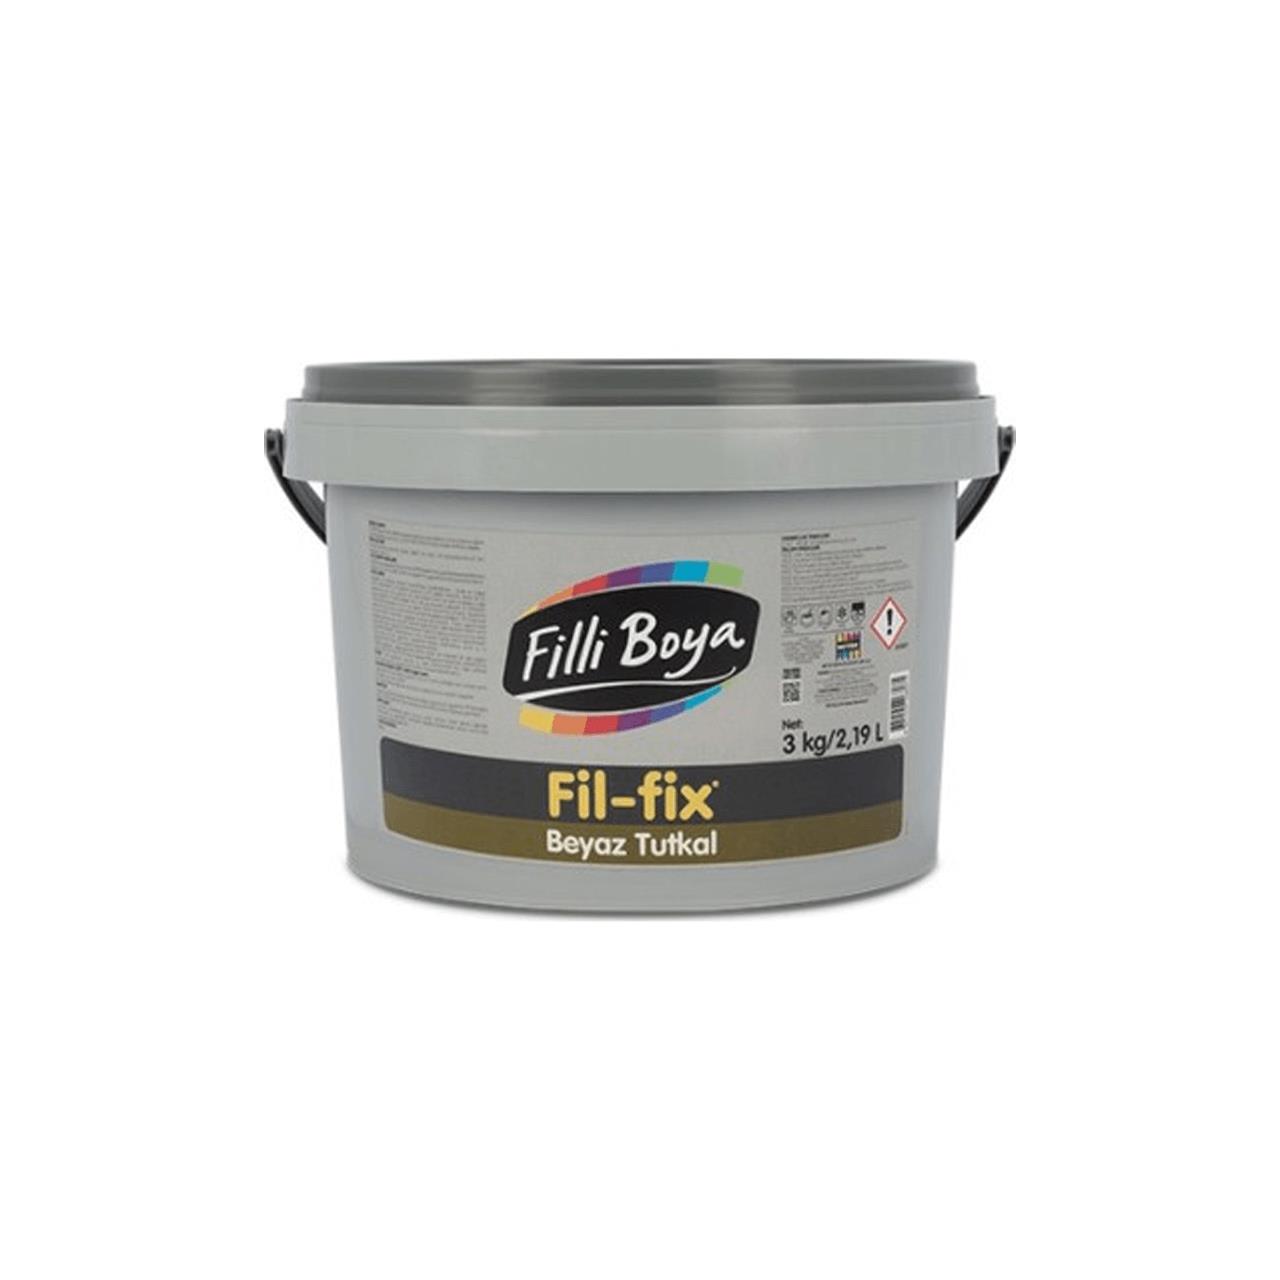 Filli Boya Fil-Fix Beyaz Tutkal  3 KG.-Tutkal ve Yapıştırıcılar-FLZ00593